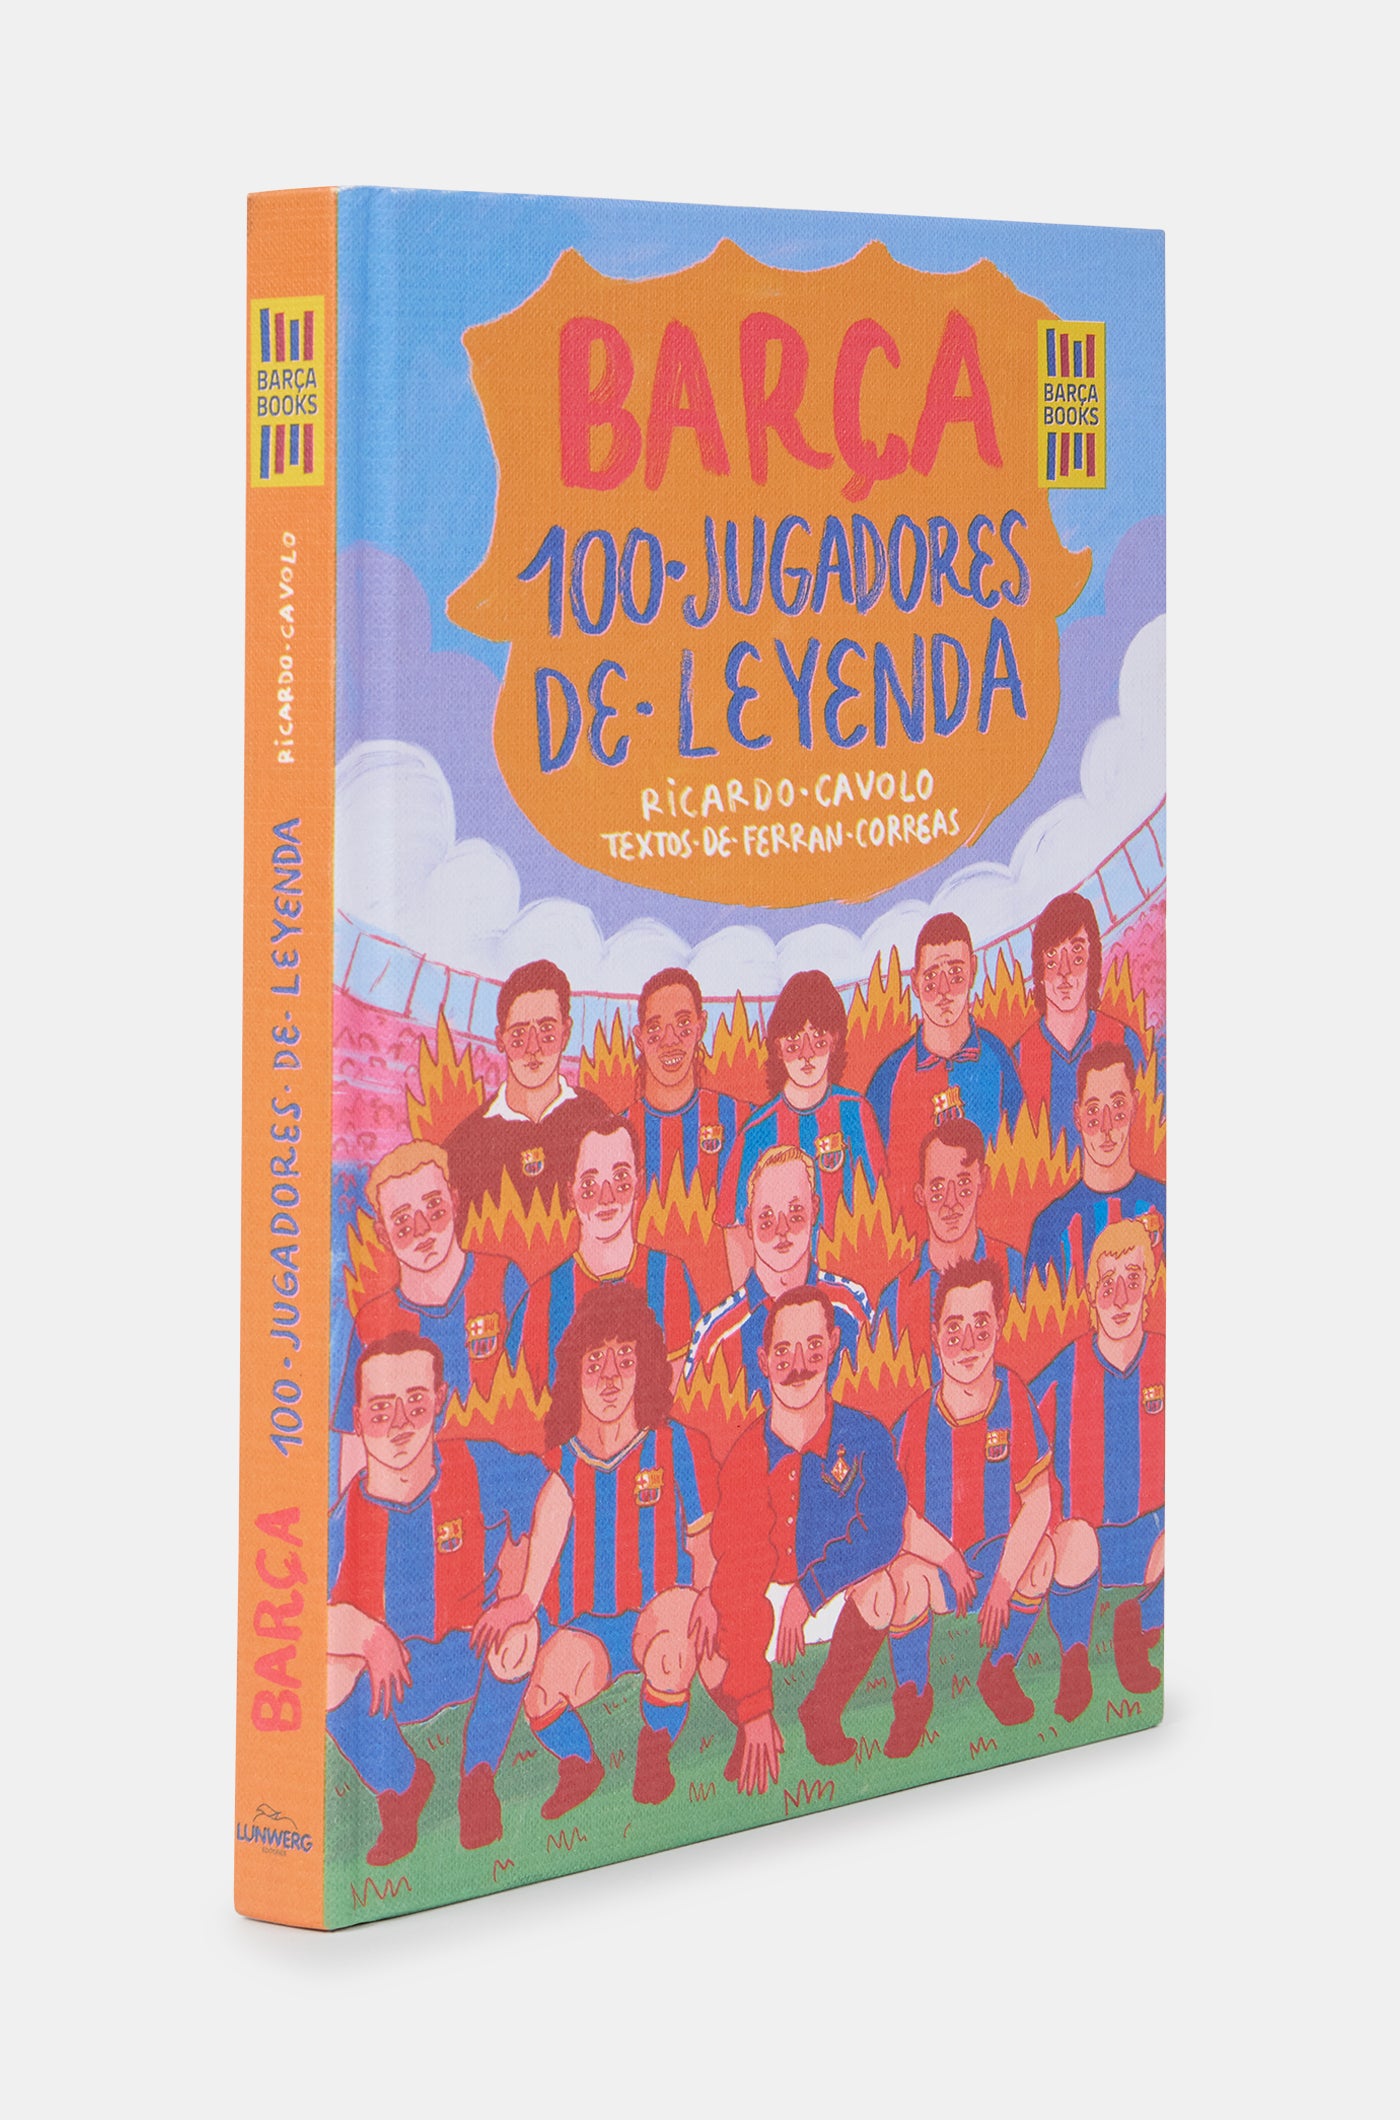 Libro "Barça. 100 jugadores de leyenda"